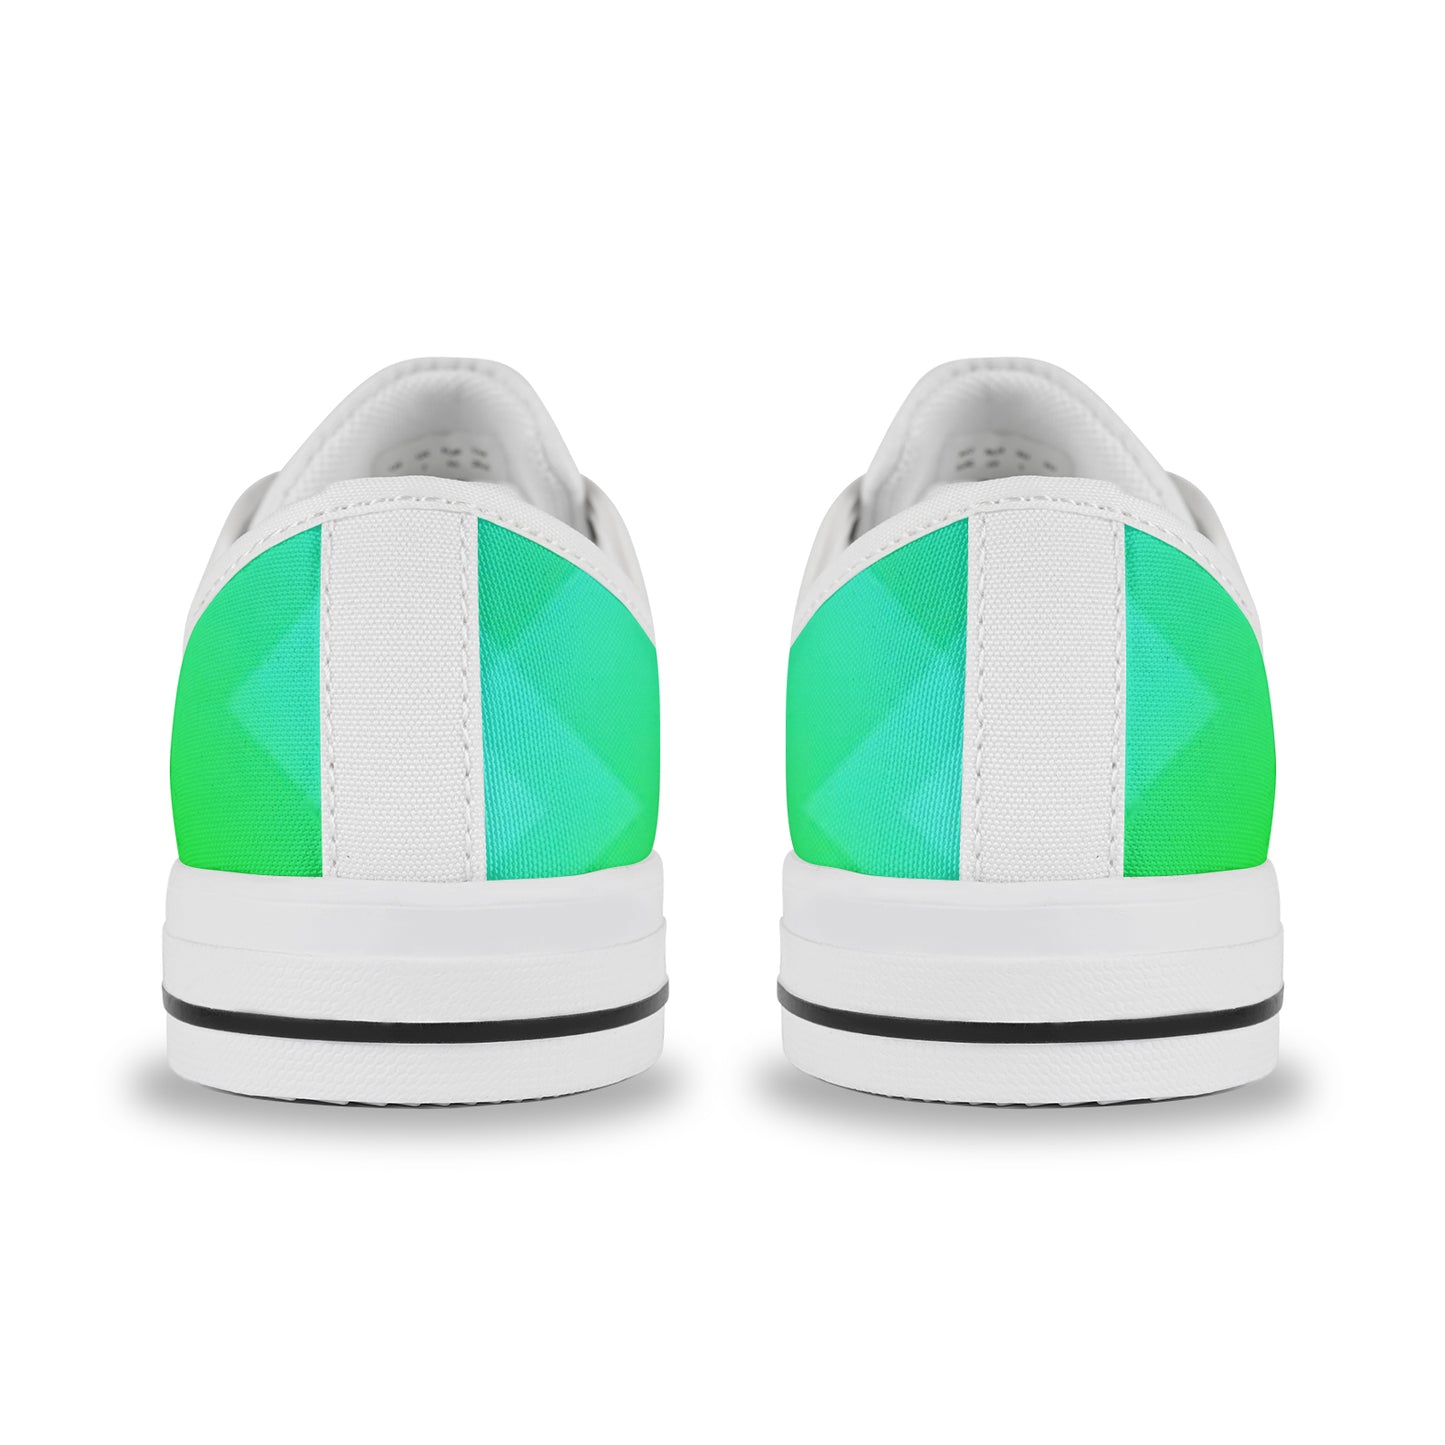 Women's Sneakers - Yellow/Green Pixel